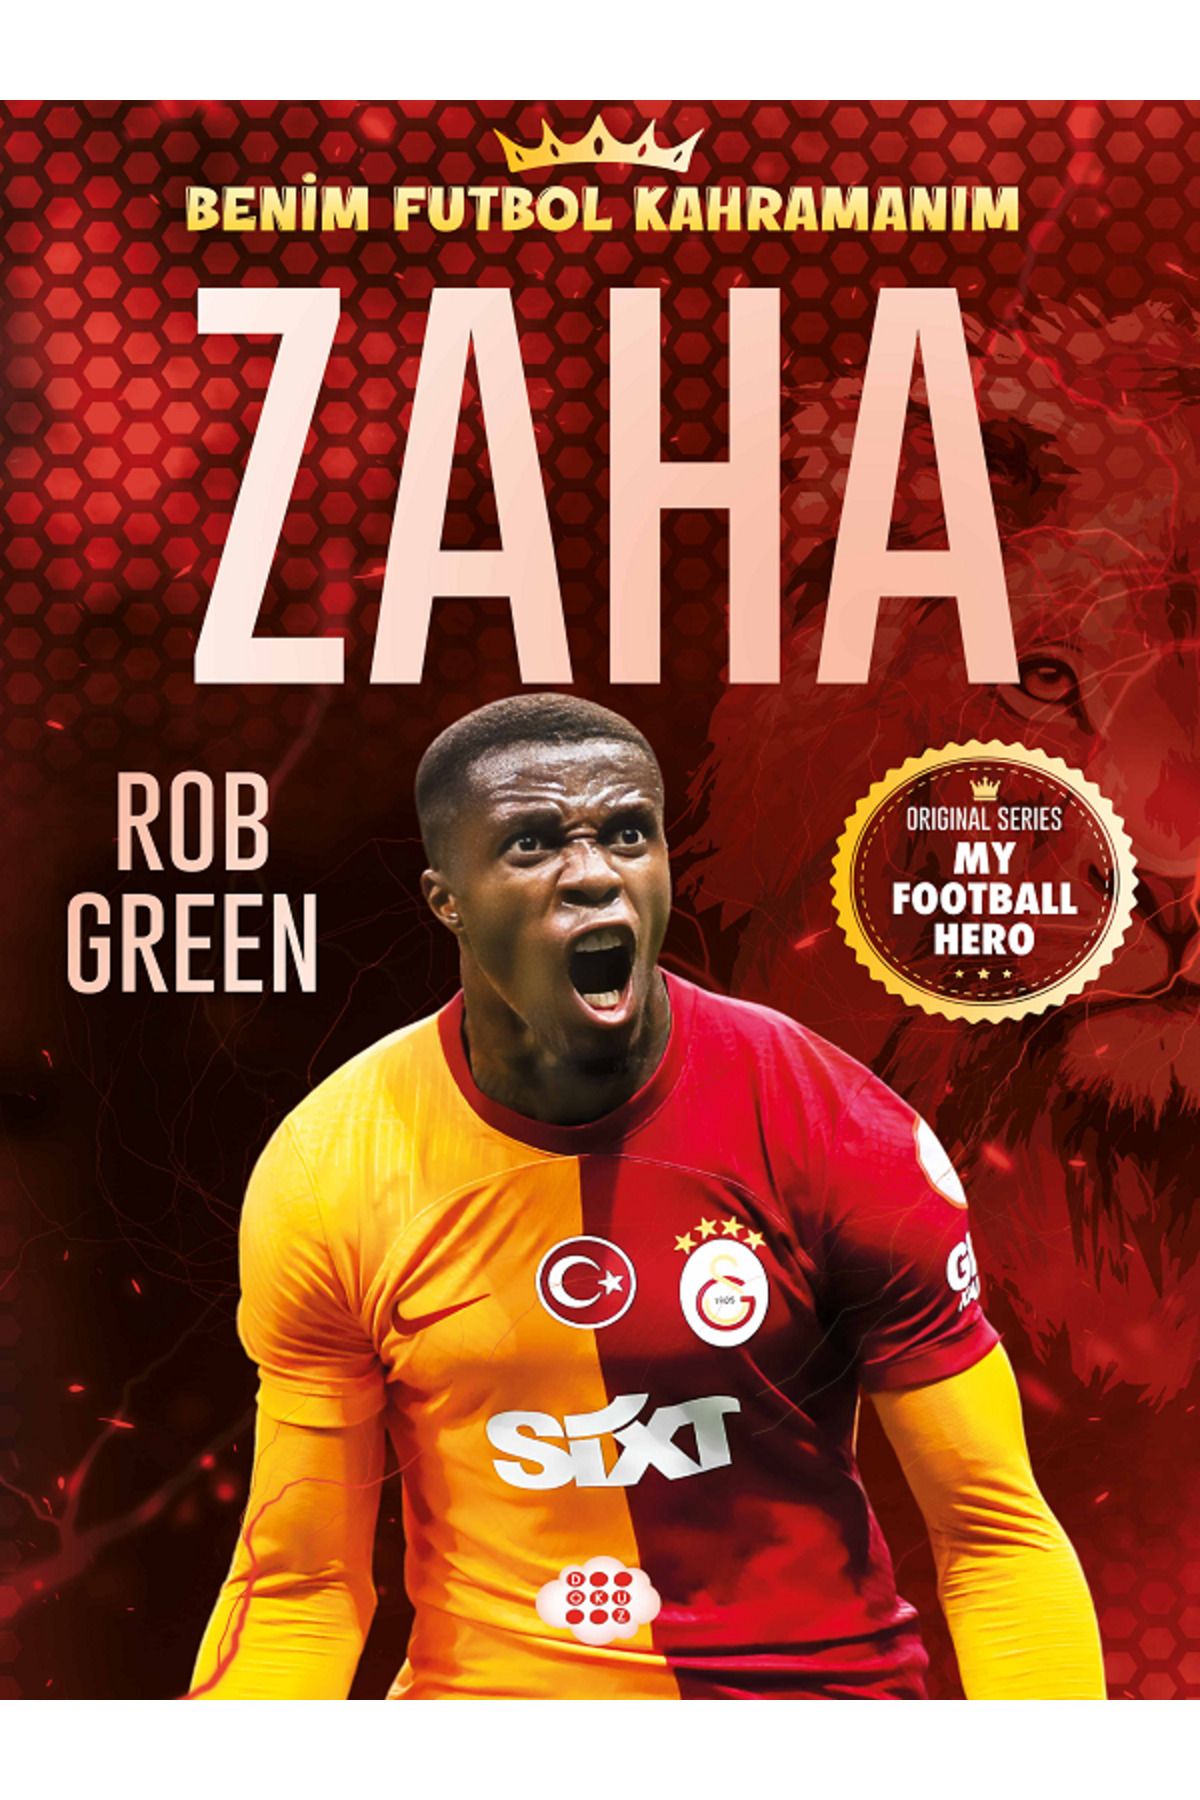 Genel Markalar Benim Futbol Kahramanım / ZAHA ( BÜYÜK Poster - Futbolcu Kartı HEDİYE )